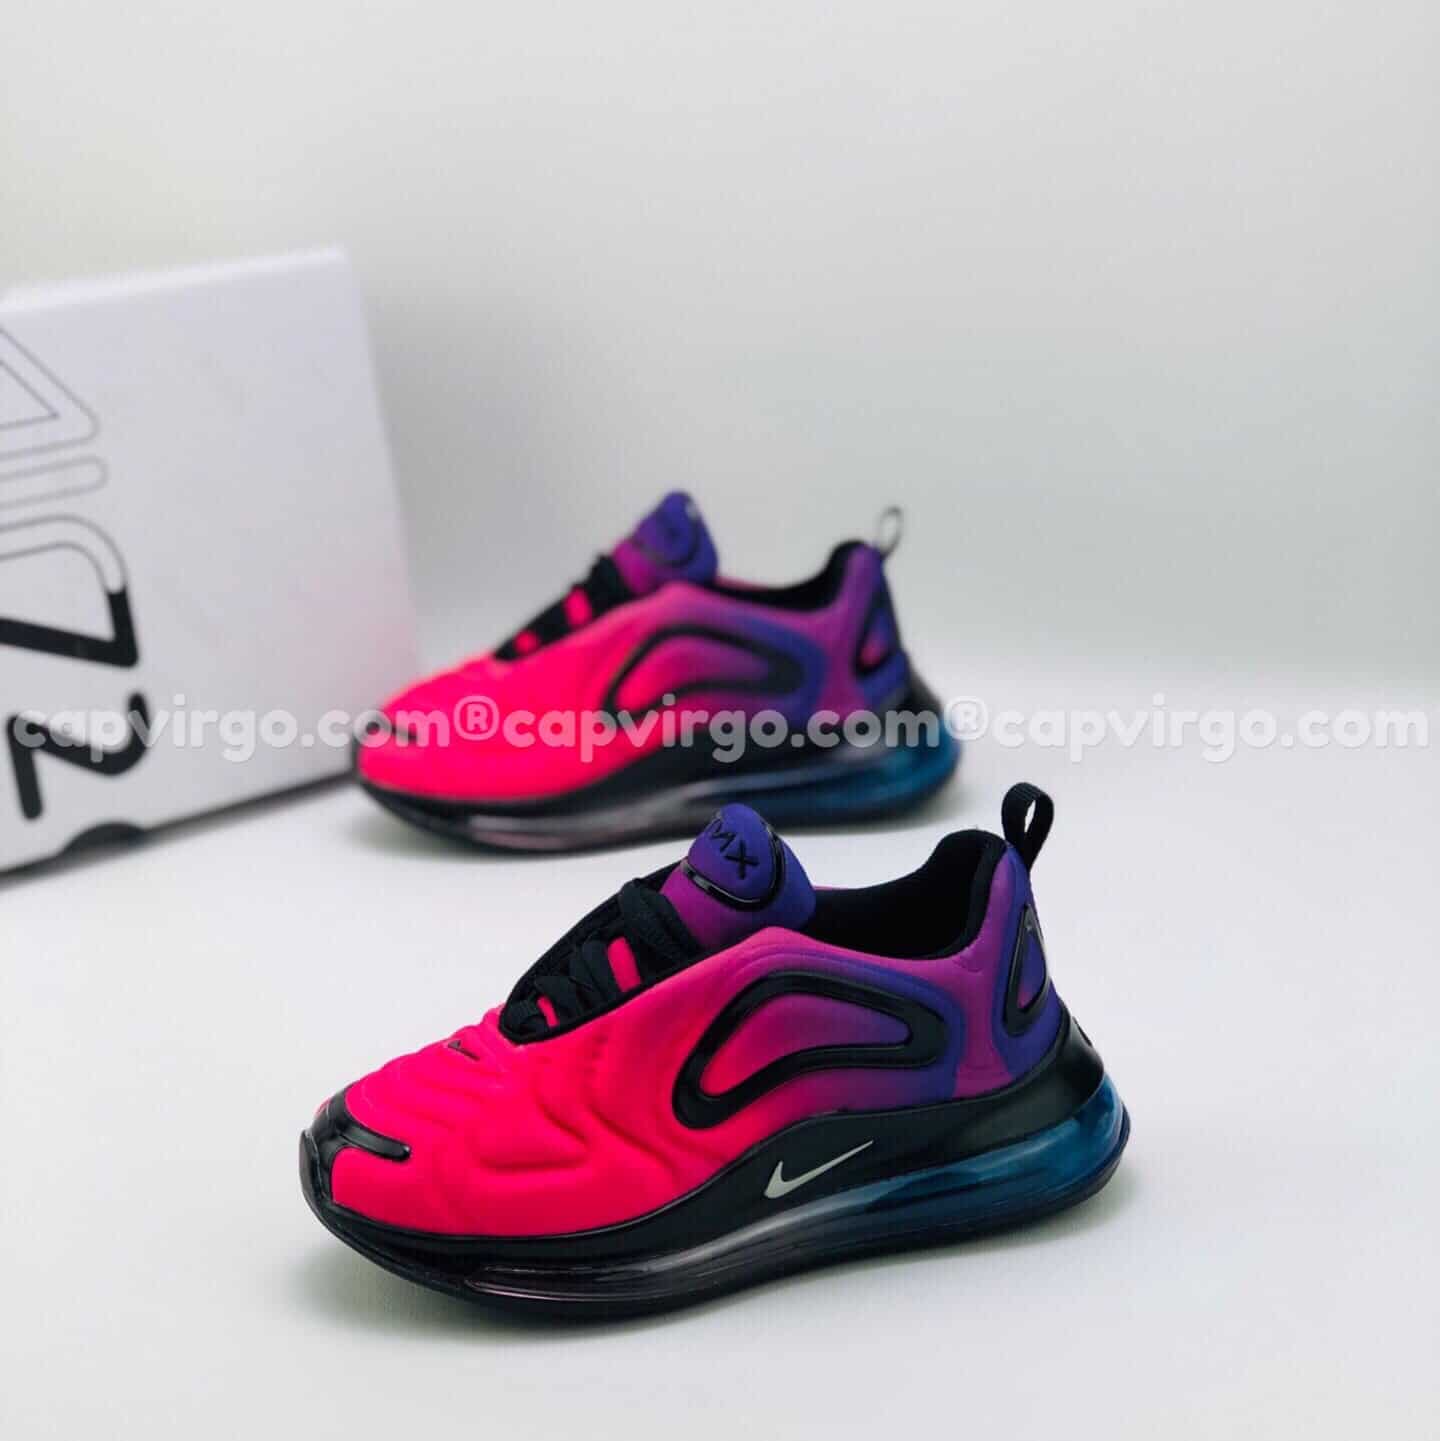 Giày trẻ em Nike air max 720 màu tím hồng